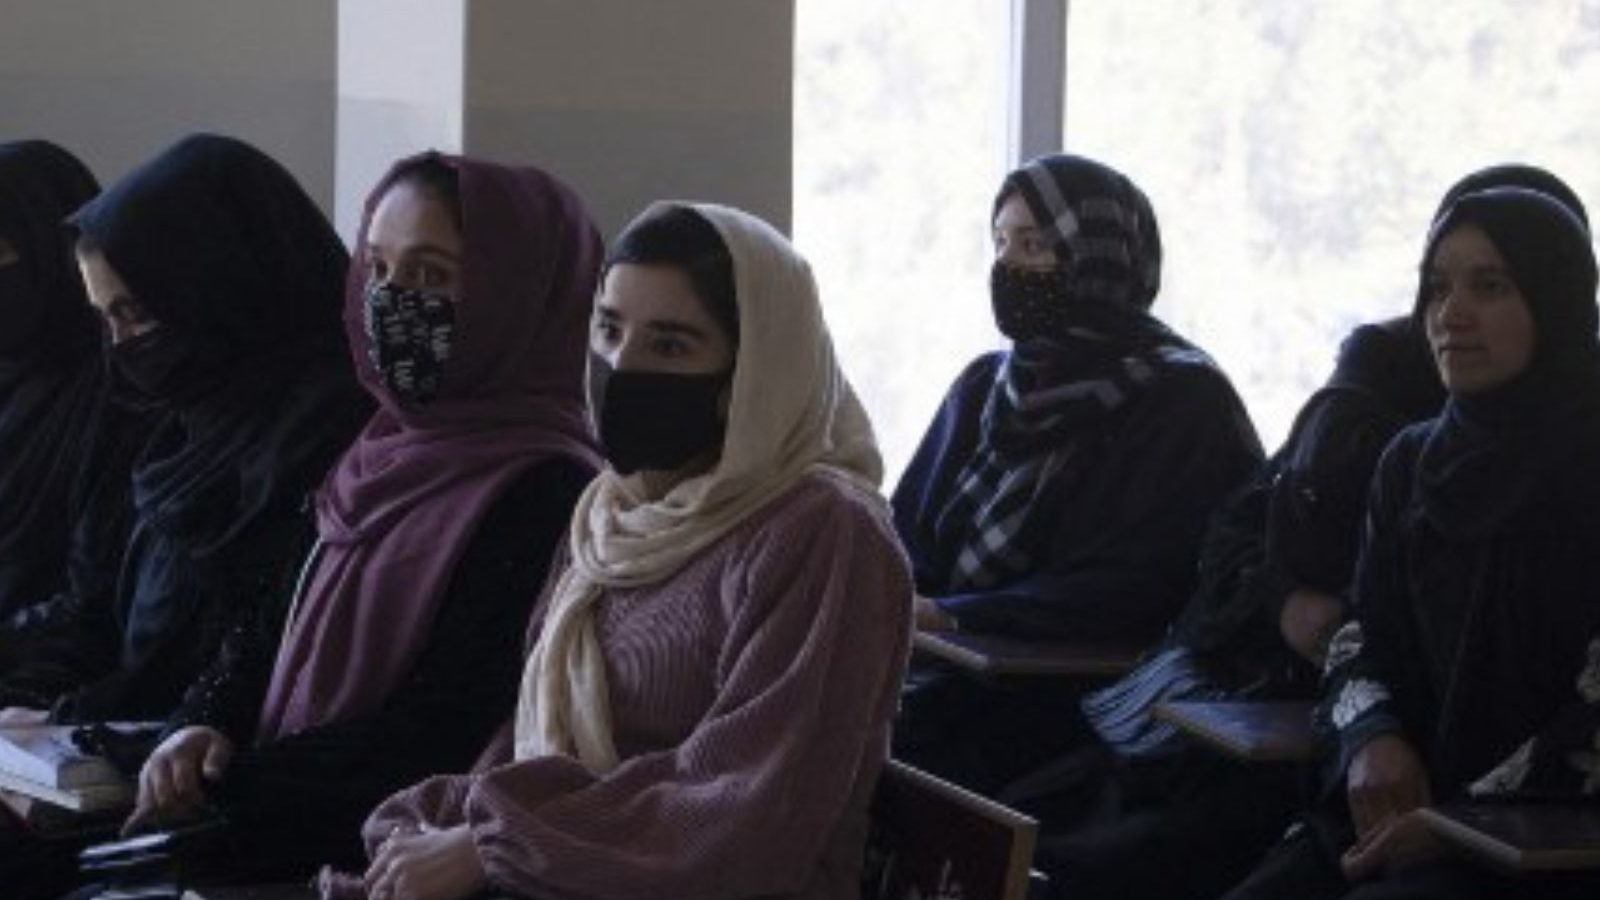 महिला कर्मचारियों पर तालिबान बार के बाद बच्चों को बचाओ, अन्य लोगों ने अफगानिस्तान के प्रयासों को निलंबित कर दिया